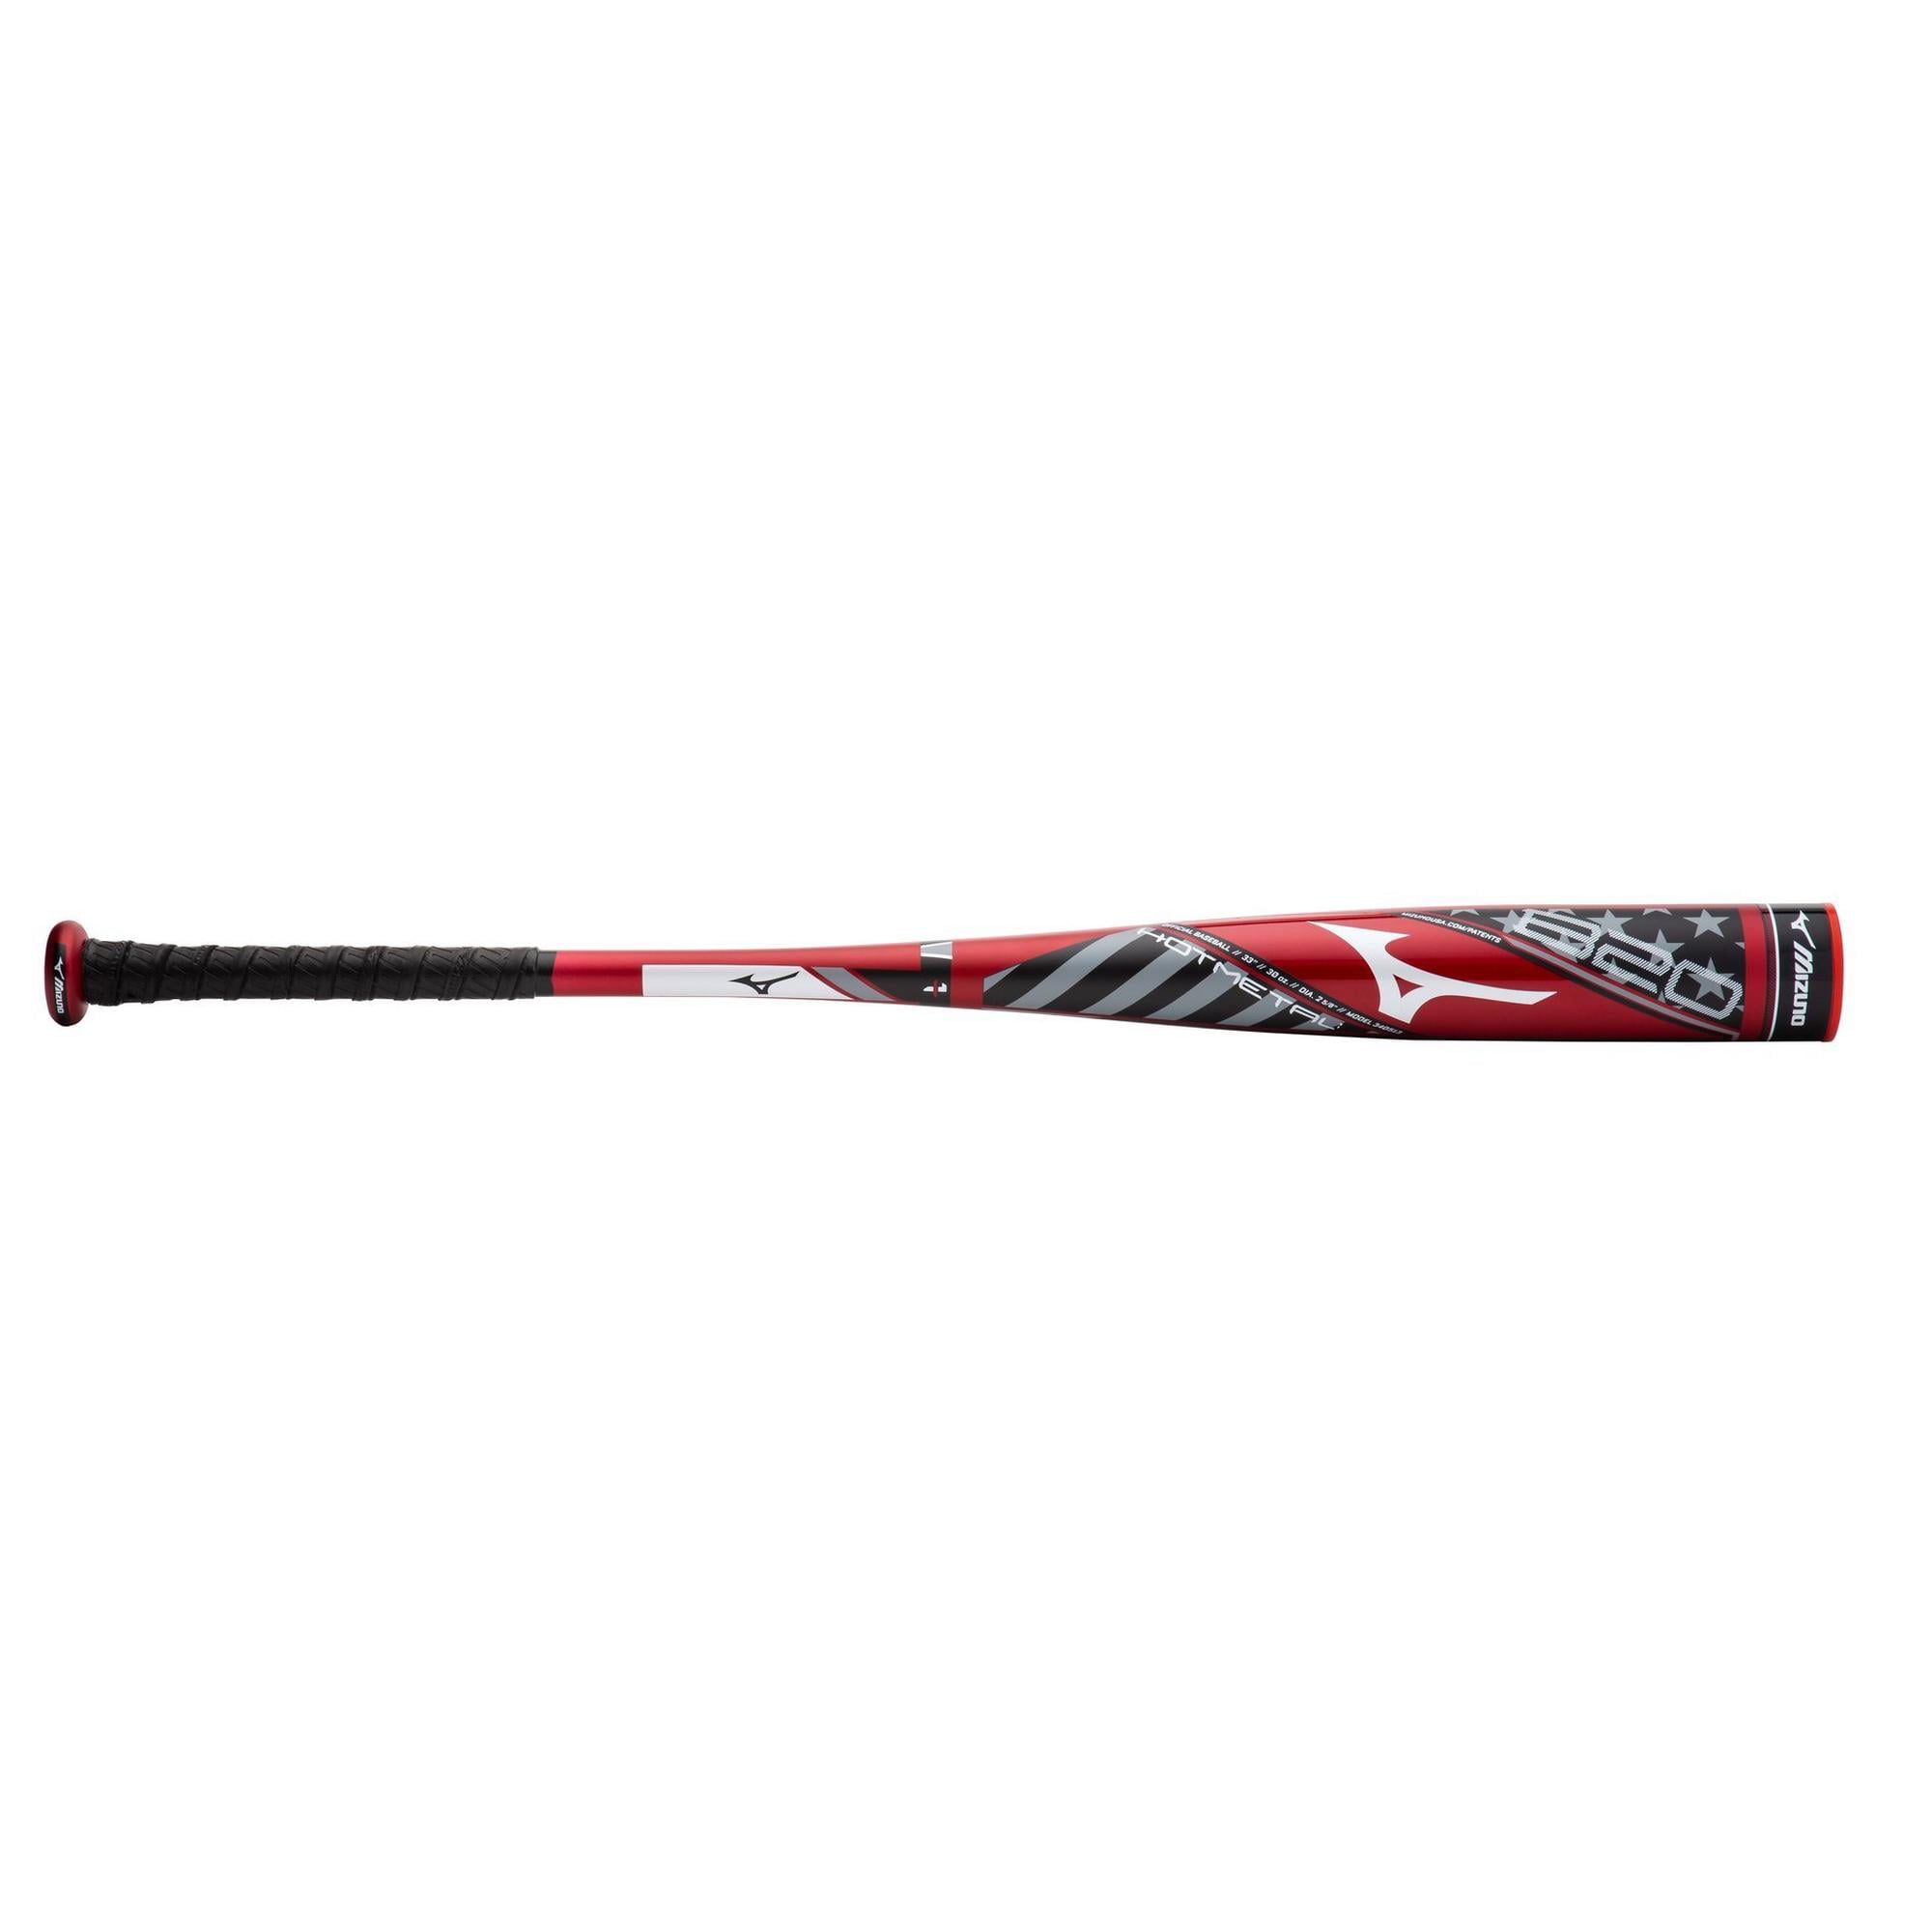 Mizuno B20-HOT METAL - BBCOR Baseball Bat (-3) - Walmart.com - Walmart.com